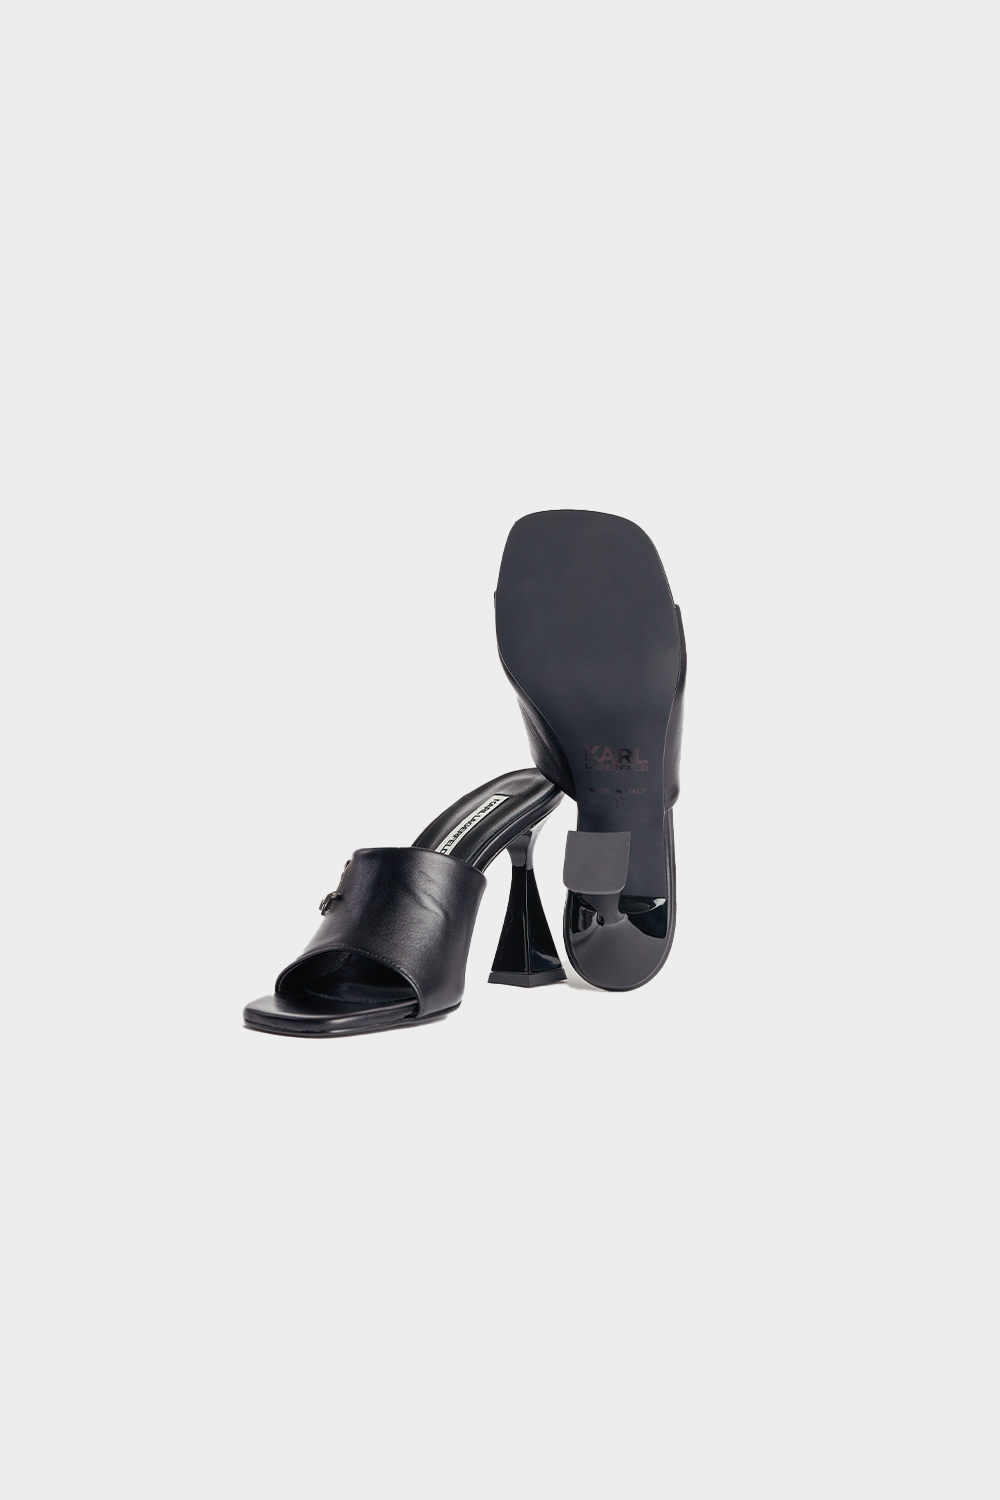 נעלי עקב לנשים בצבע שחור KARL LAGERFELD KARL LAGERFELD Vendome online | ונדום .